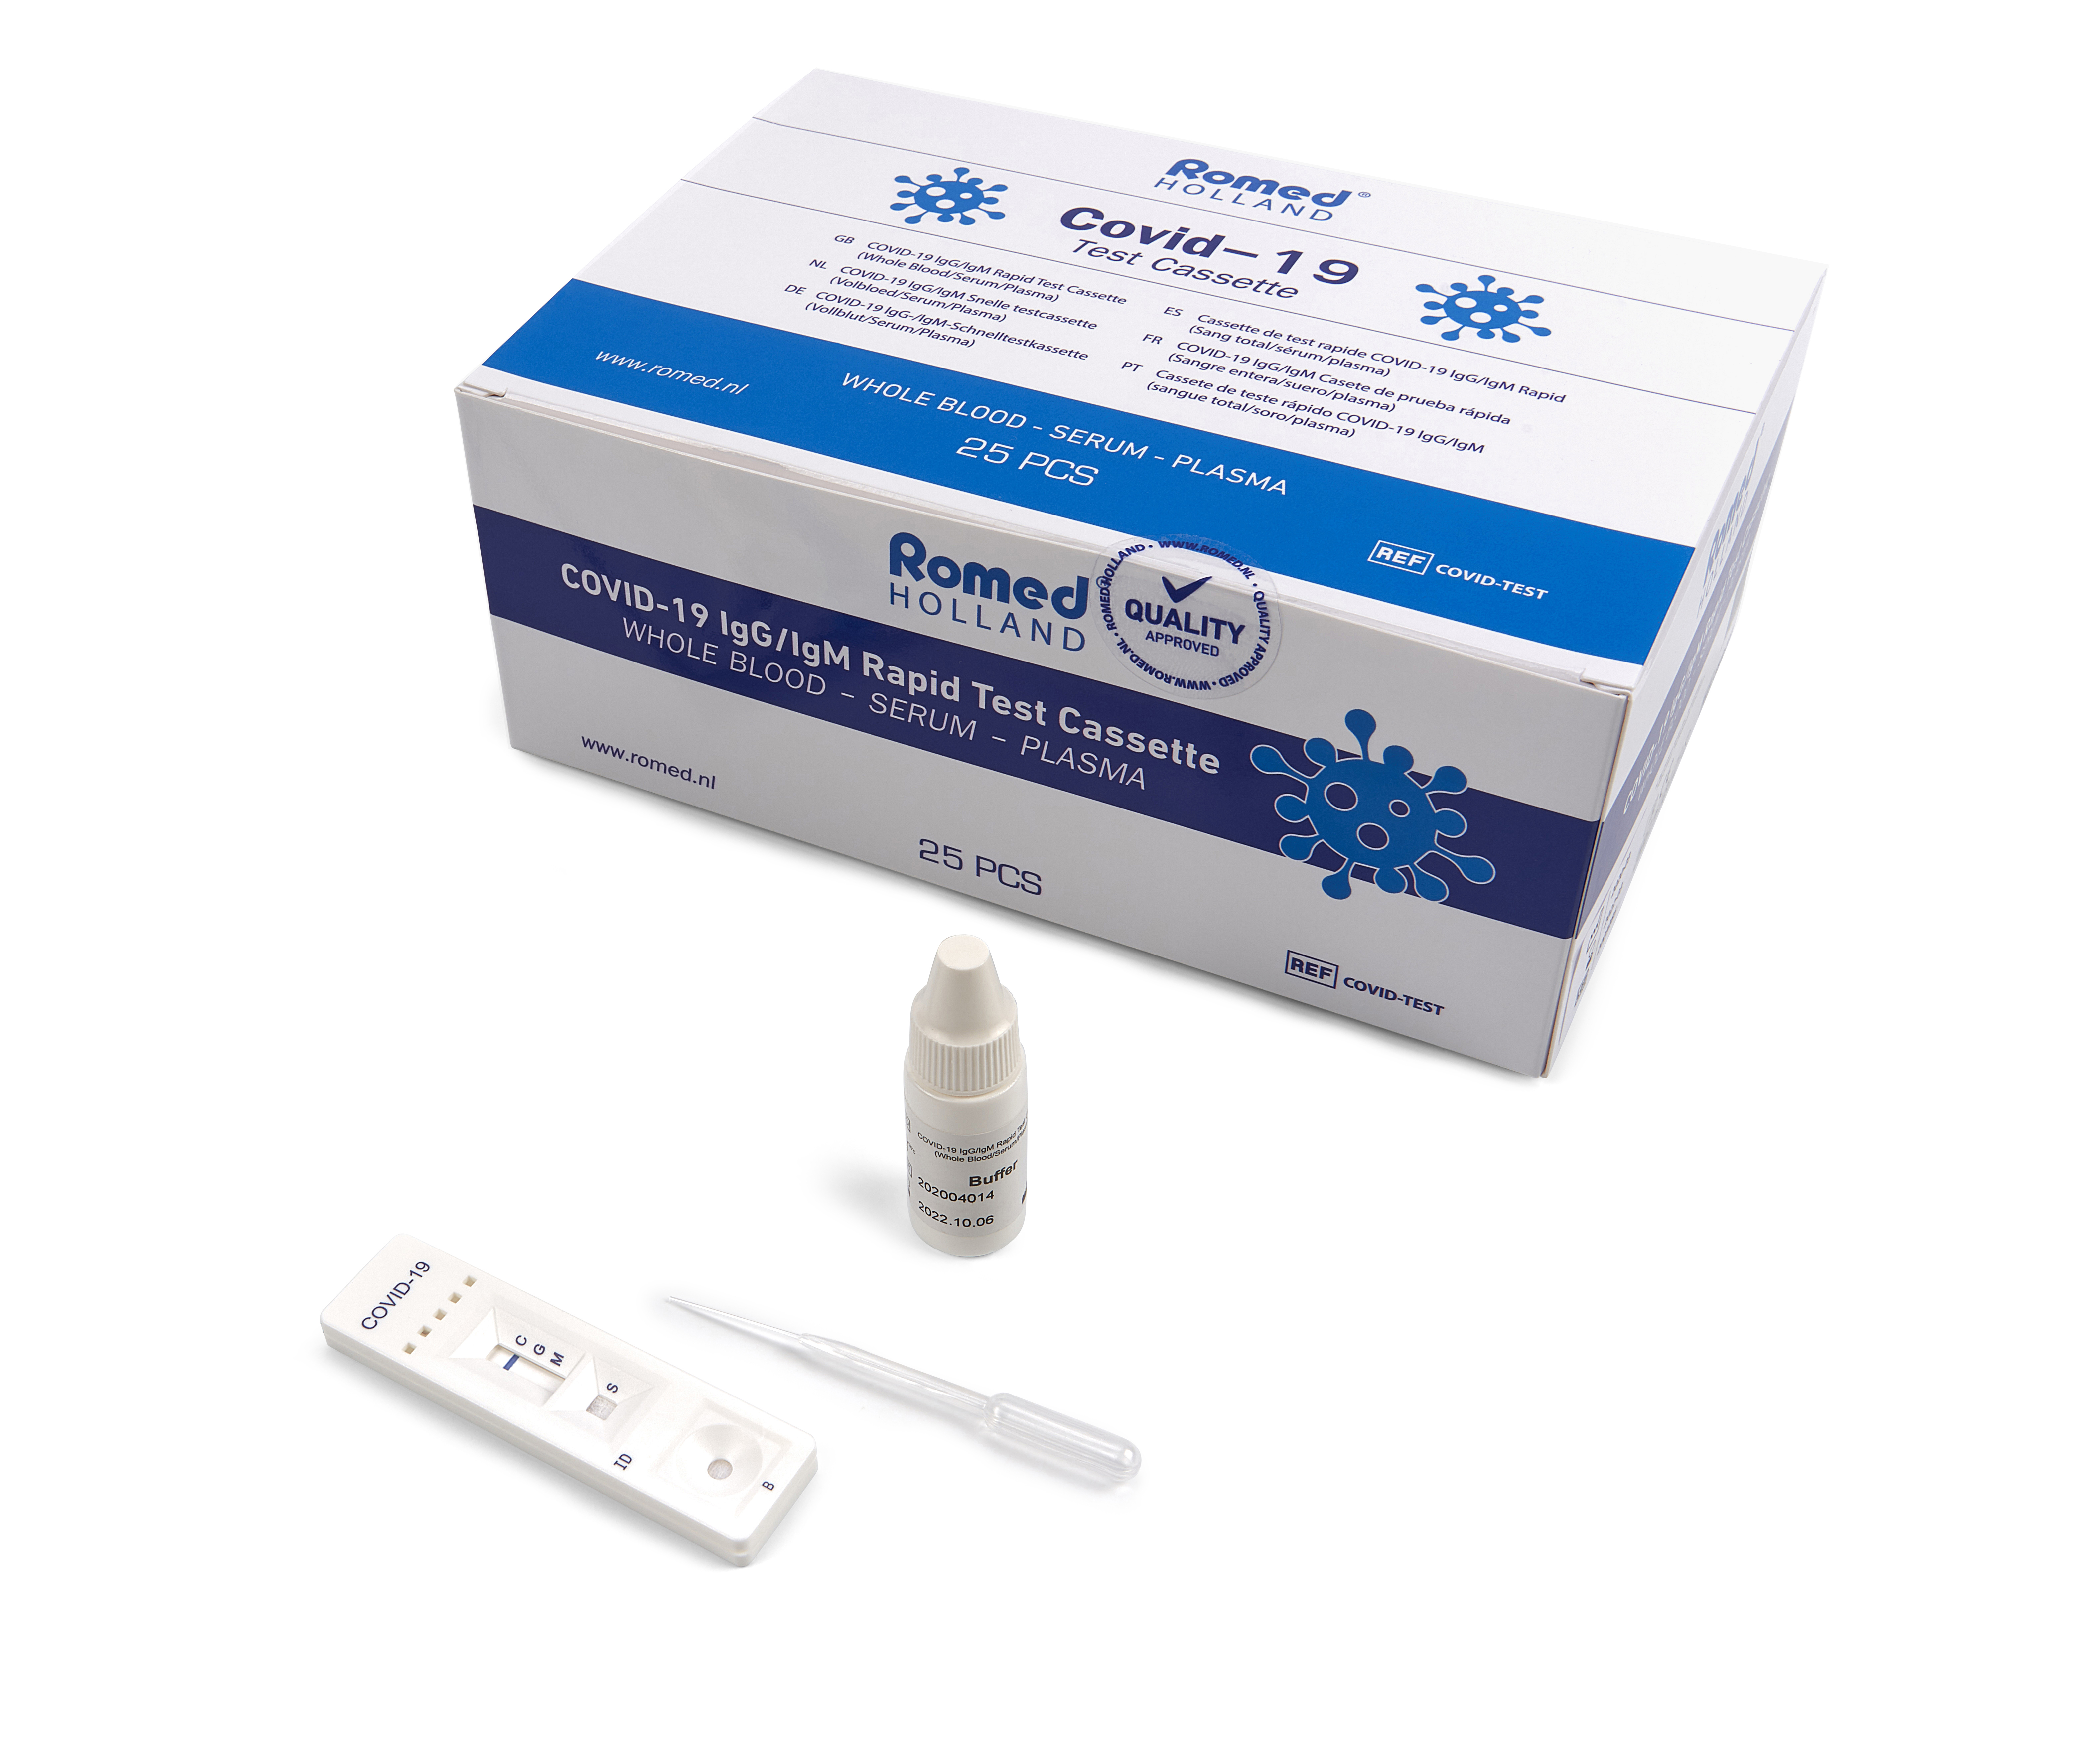 COVIDTEST Romed COVID-19 sérologique cassette de test rapide pour la détection de anticorps (IgG/IgM). Ce test est un test de diagnostic rapide par immunochromatographie en phase solide pour la détection rapide, qualitative et différentielle des anticorps IgG et IgM dirigés contre le nouveau coronavirus 2019 dans le sang total humain, le sérum ou le plasma.

Emballé par 25 pièces dans une boîte intérieure, 1250 pièces par carton.